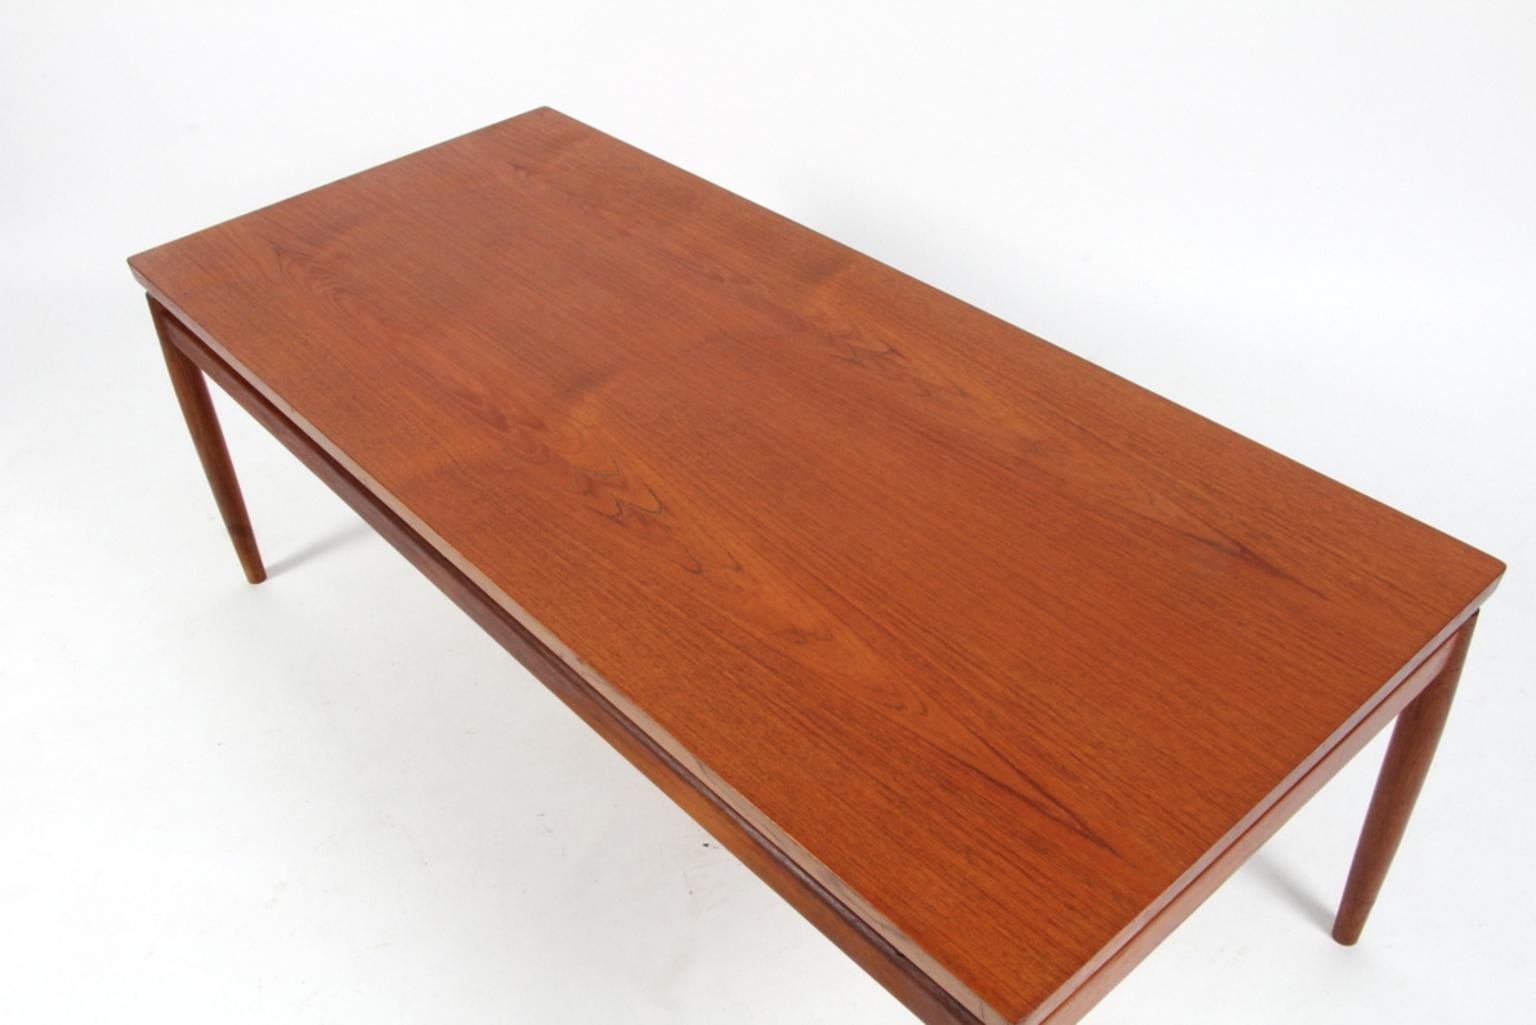 Scandinavian Modern Grete Jalk Sofa Table, Model 622 / 54, in Teak, France & Son, 1960s